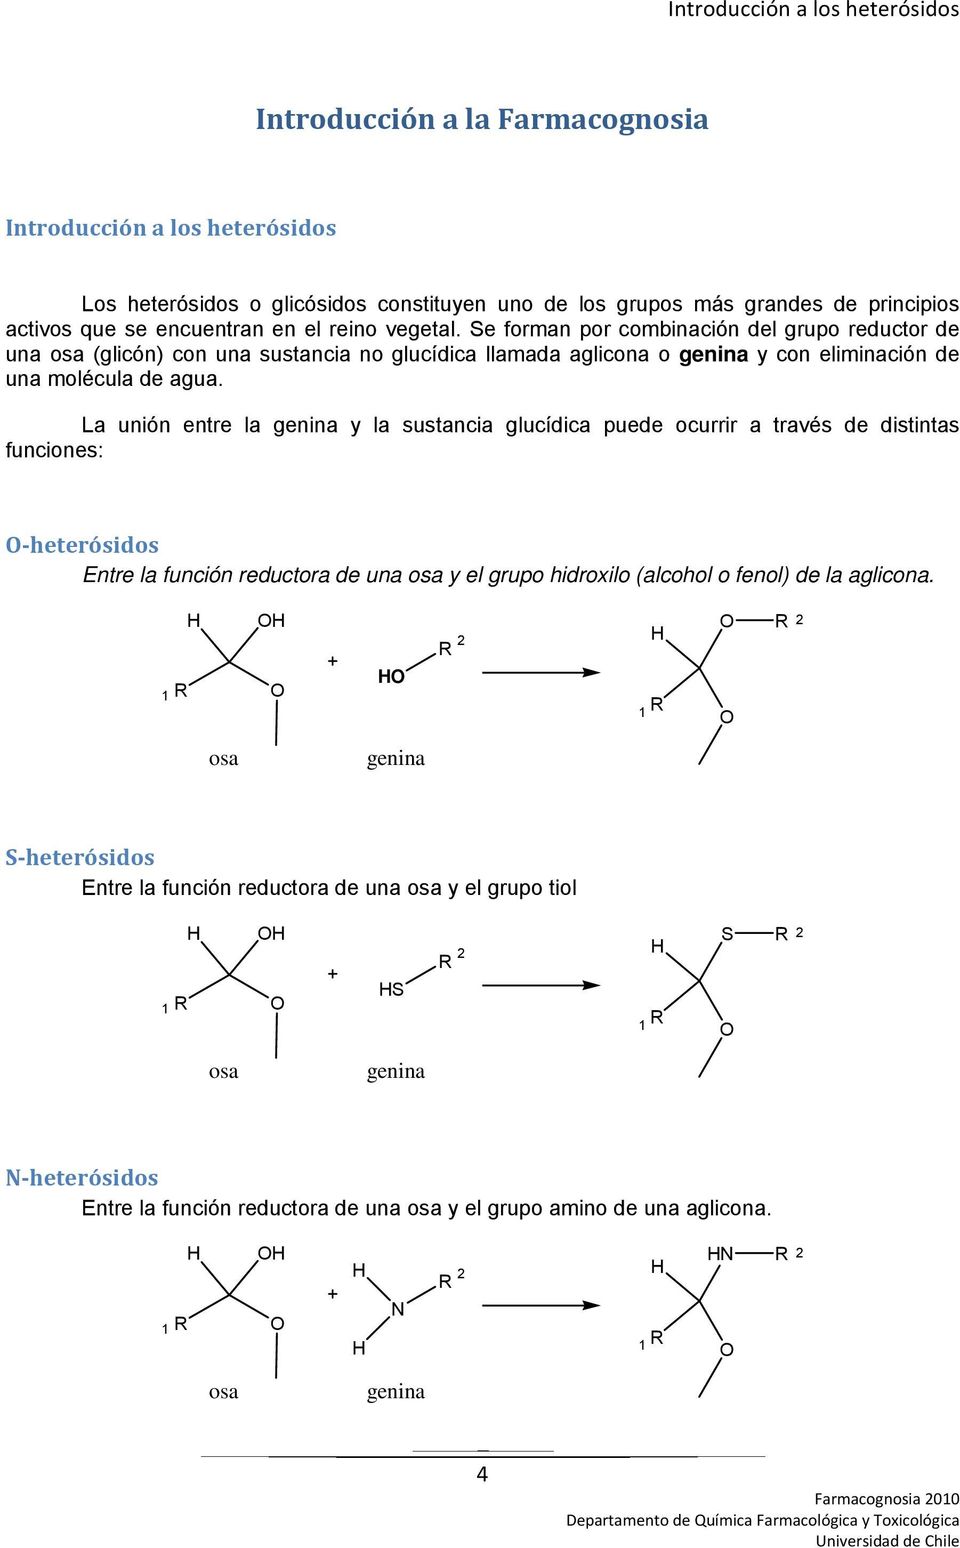 La unión entre la genina y la sustancia glucídica puede ocurrir a través de distintas funciones: heterósidos Entre la función reductora de una osa y el grupo hidroxilo (alcohol o fenol) de la